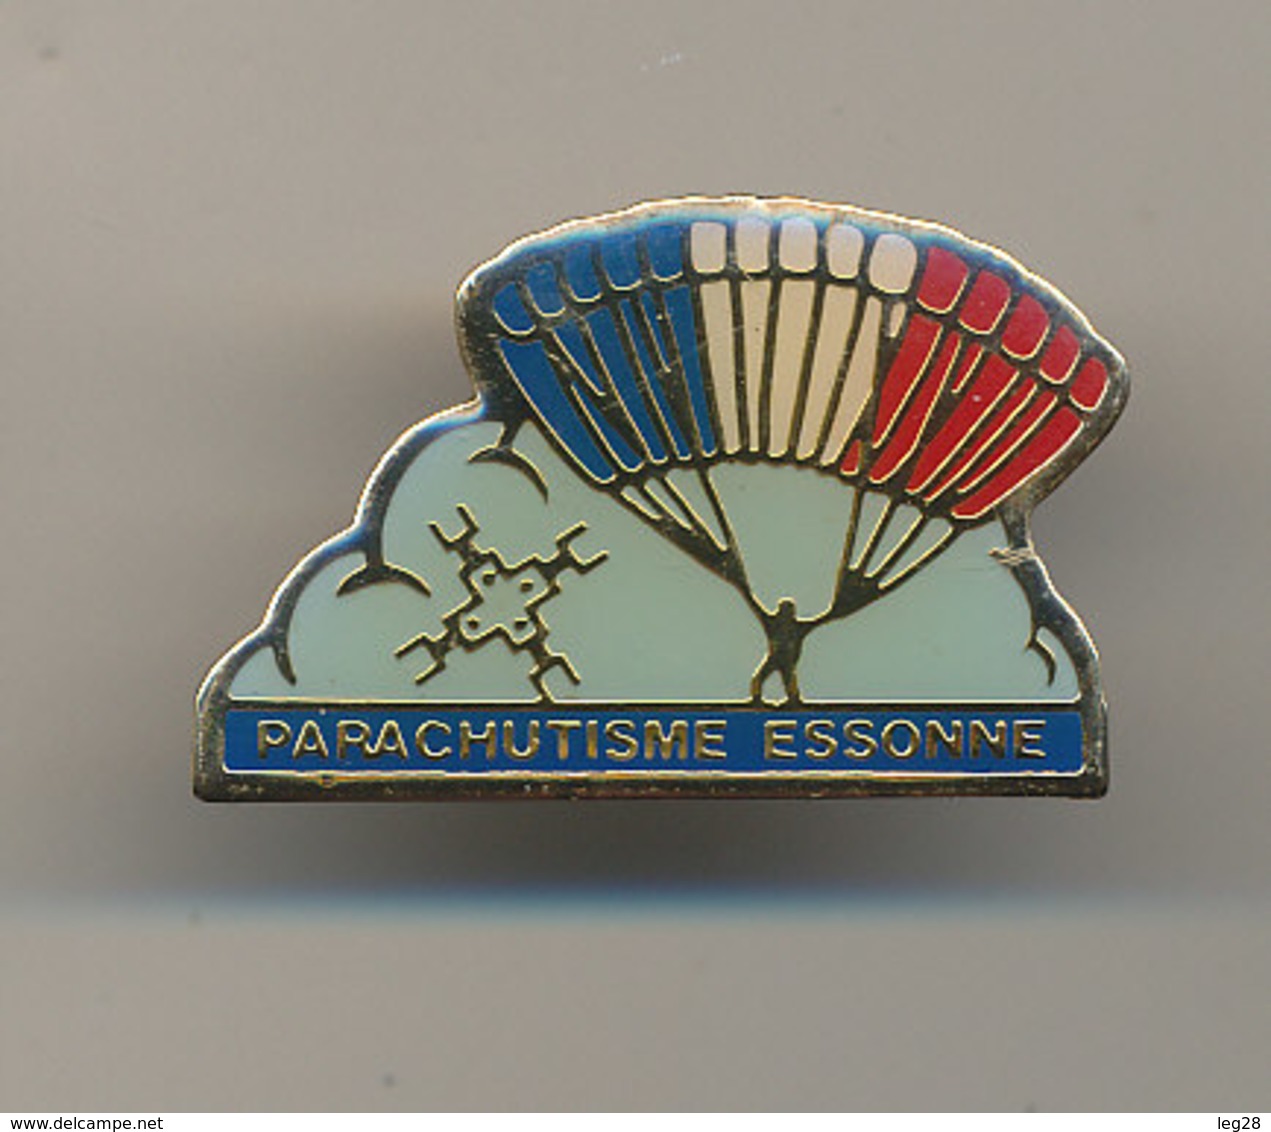 PARACHUTISME ESSONNE - Parachutespringen